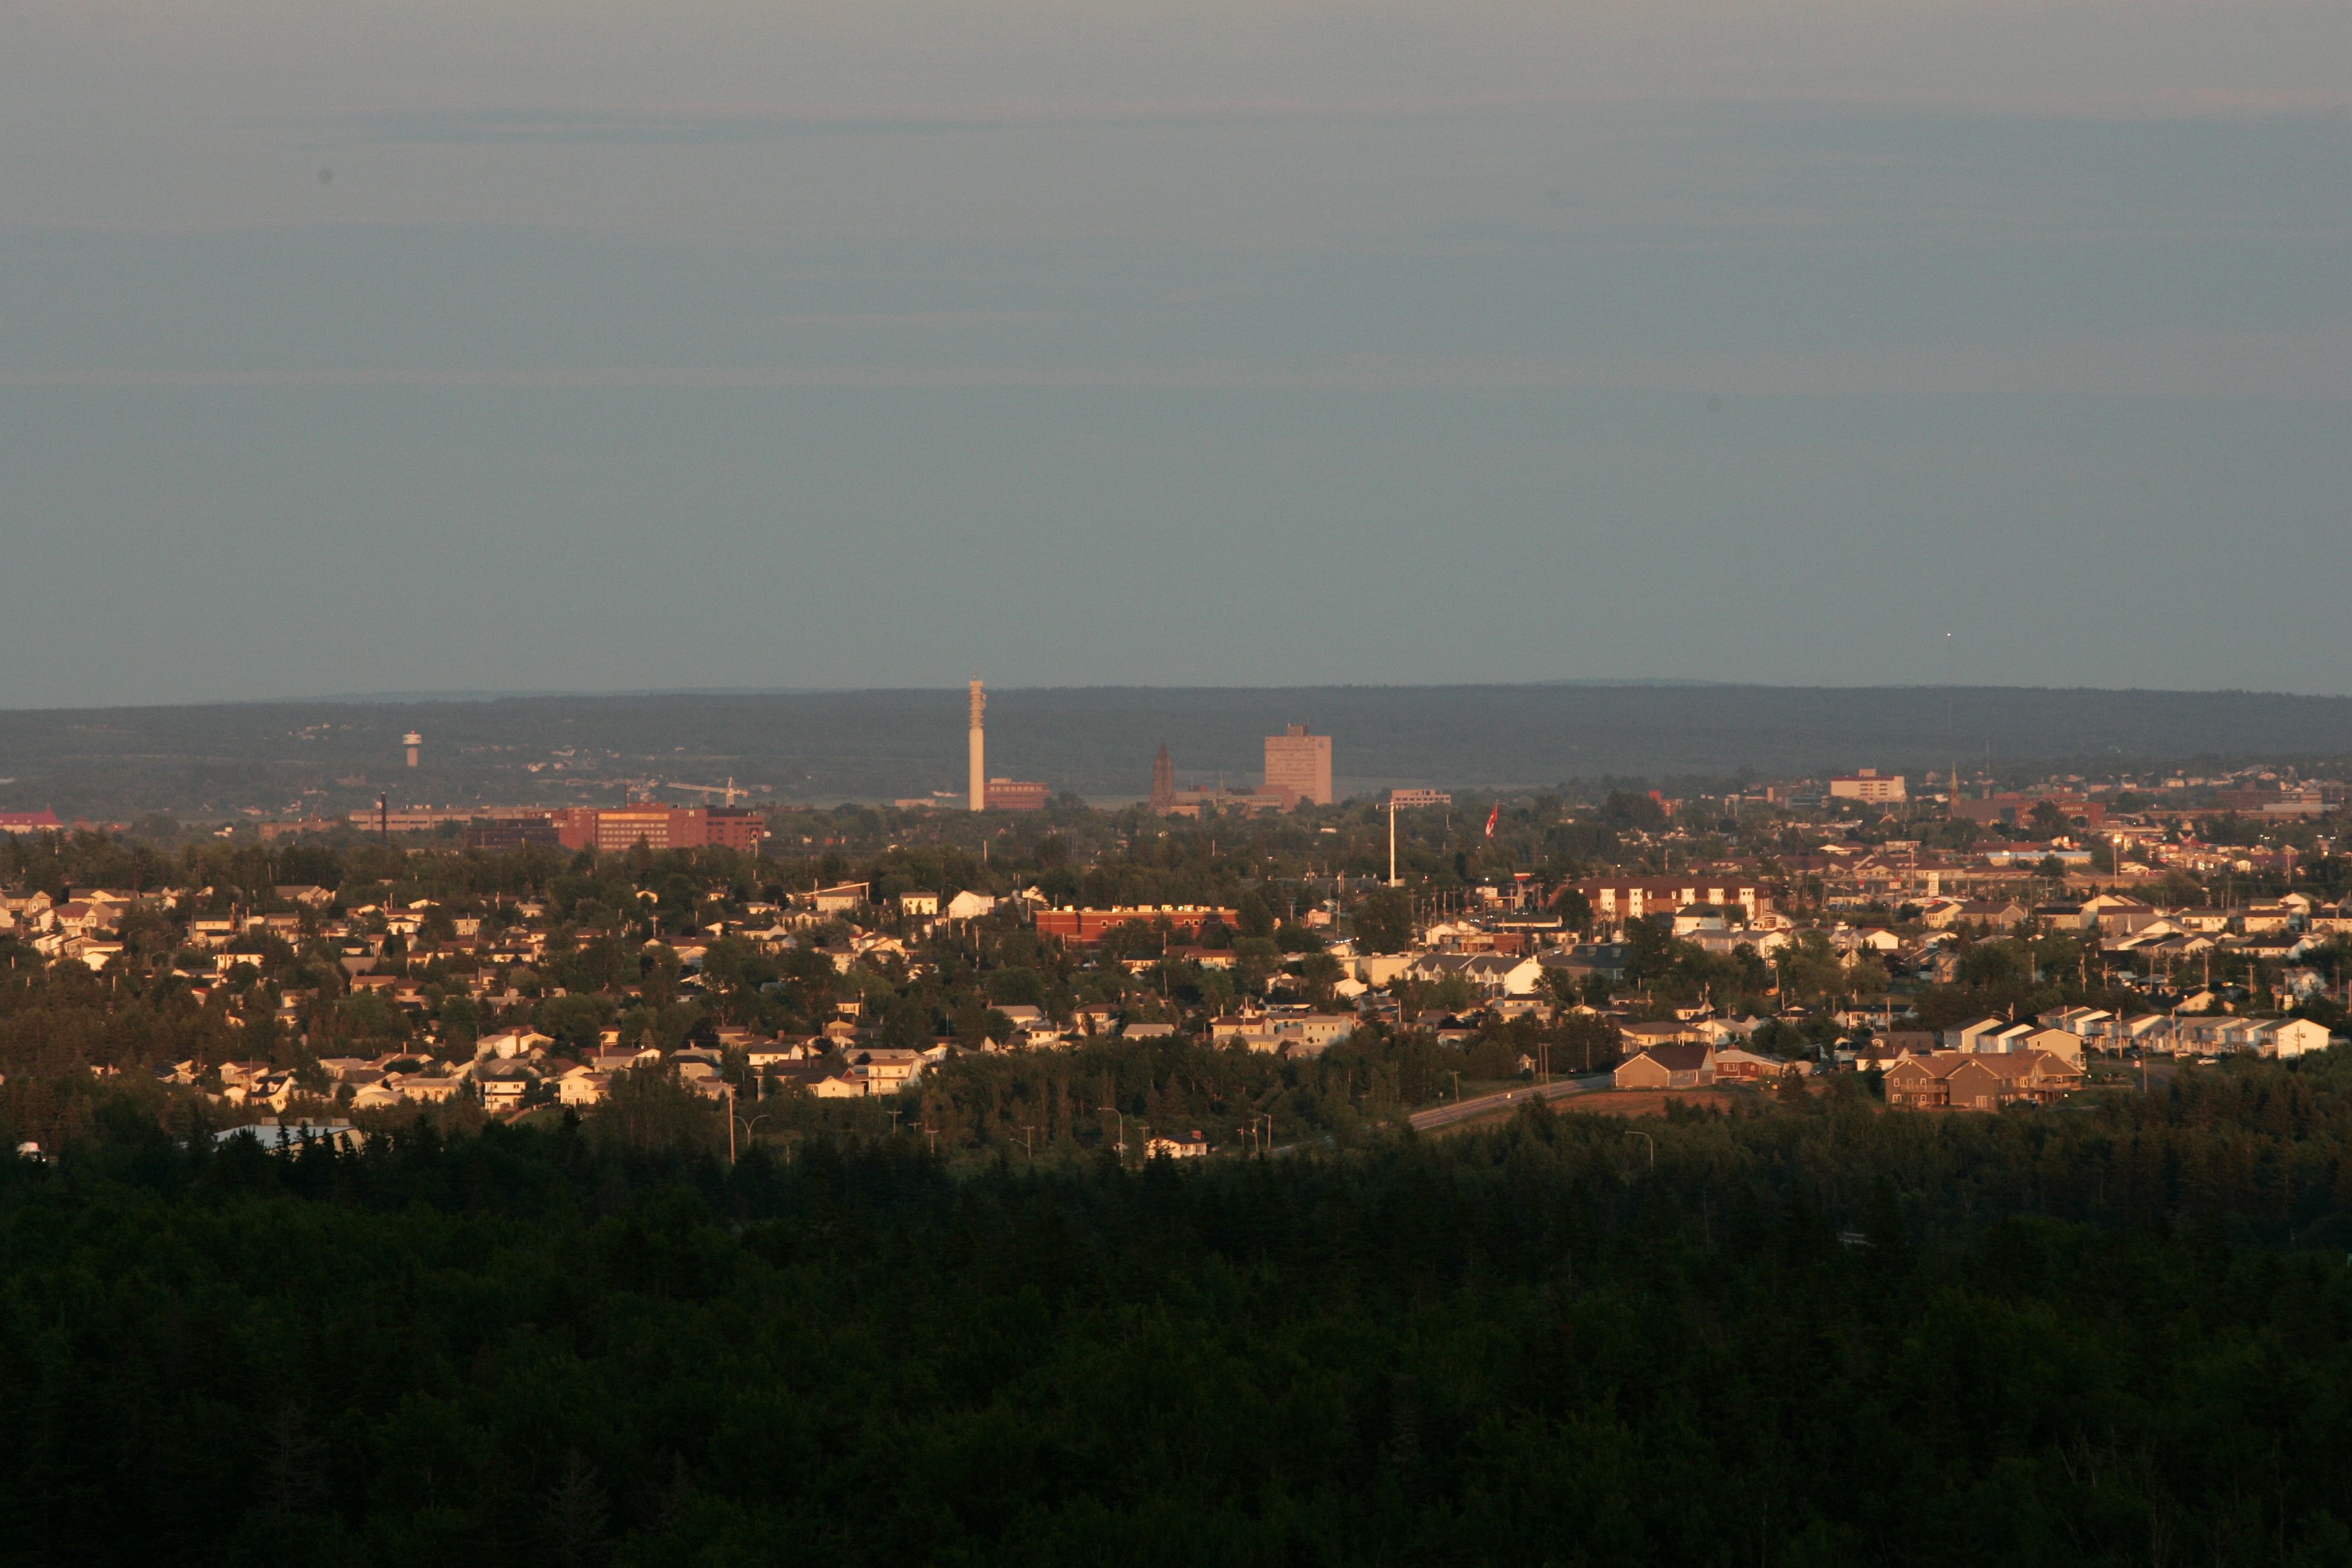 La puesta de sol proyecta una cálida luz sobre el horizonte de Moncton, Carolina del Norte, el jueves 6 de julio de 2006.